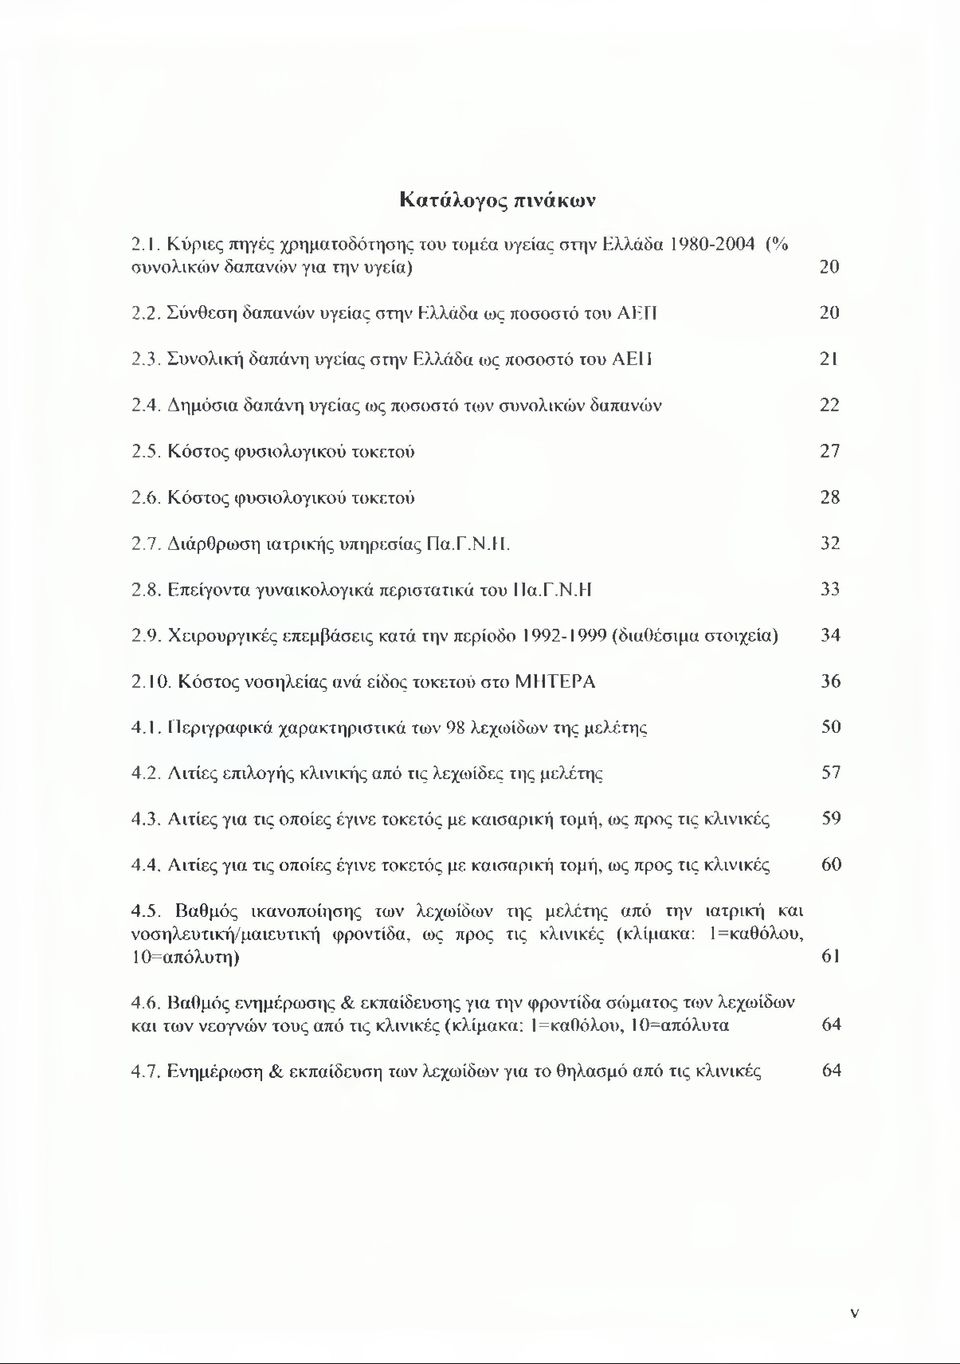 Γ.Ν.ΕΙ. 32 2.8. Επείγοντα γυναικολογικά περιστατικά του ΙΙα.Ε.Ν.Η 33 2.9. Χειρουργικές επεμβάσεις κατά την περίοδο 1992-1999 (διαθέσιμα στοιχεία) 34 2.10.